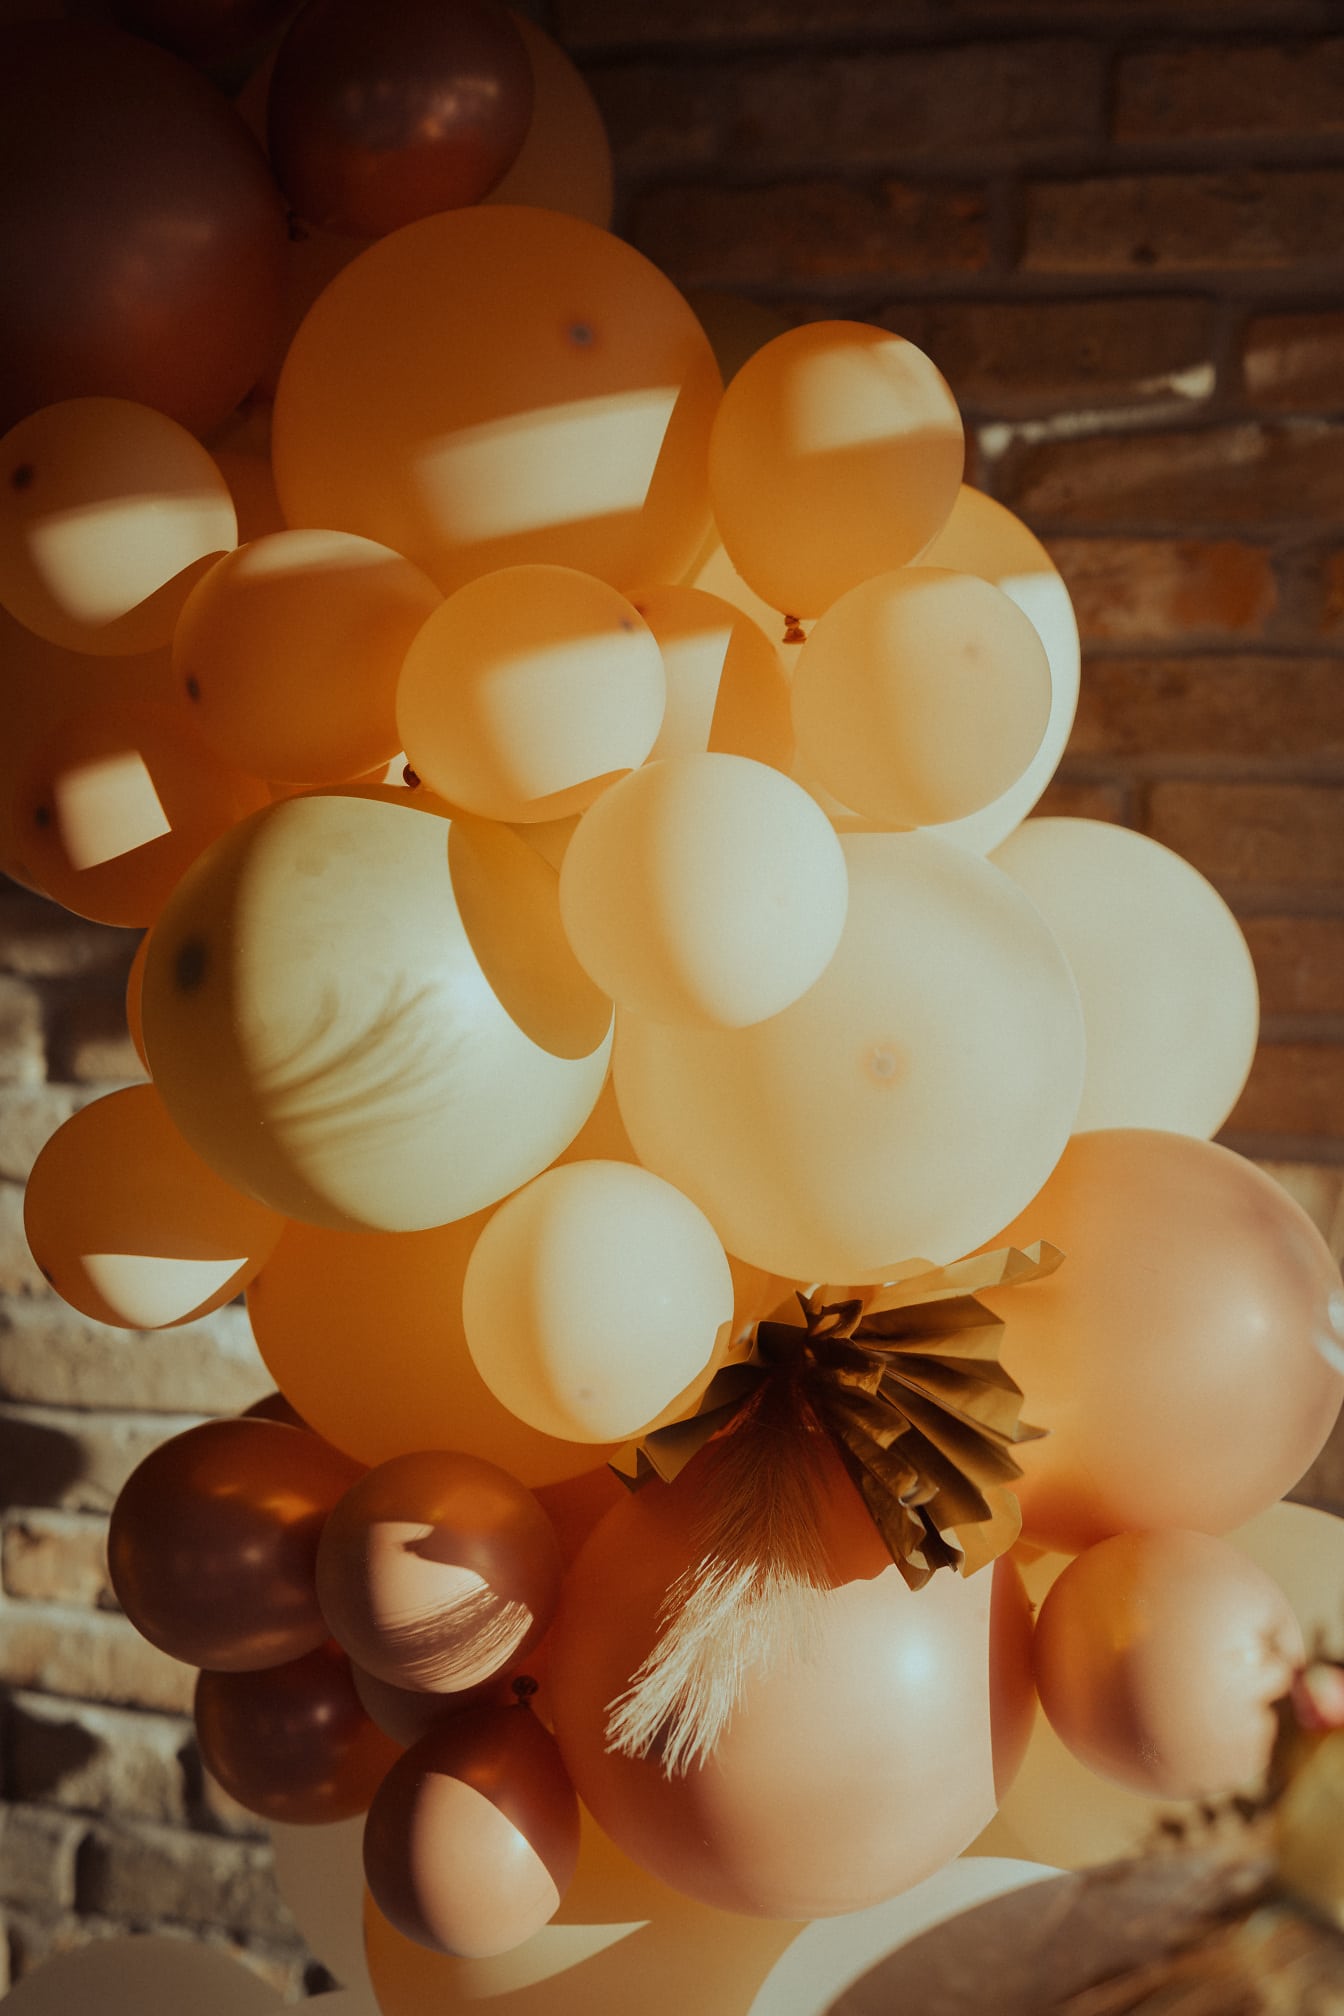 Güneş ışığı doğum günü partisinde pastel açık kahverengi balonlar